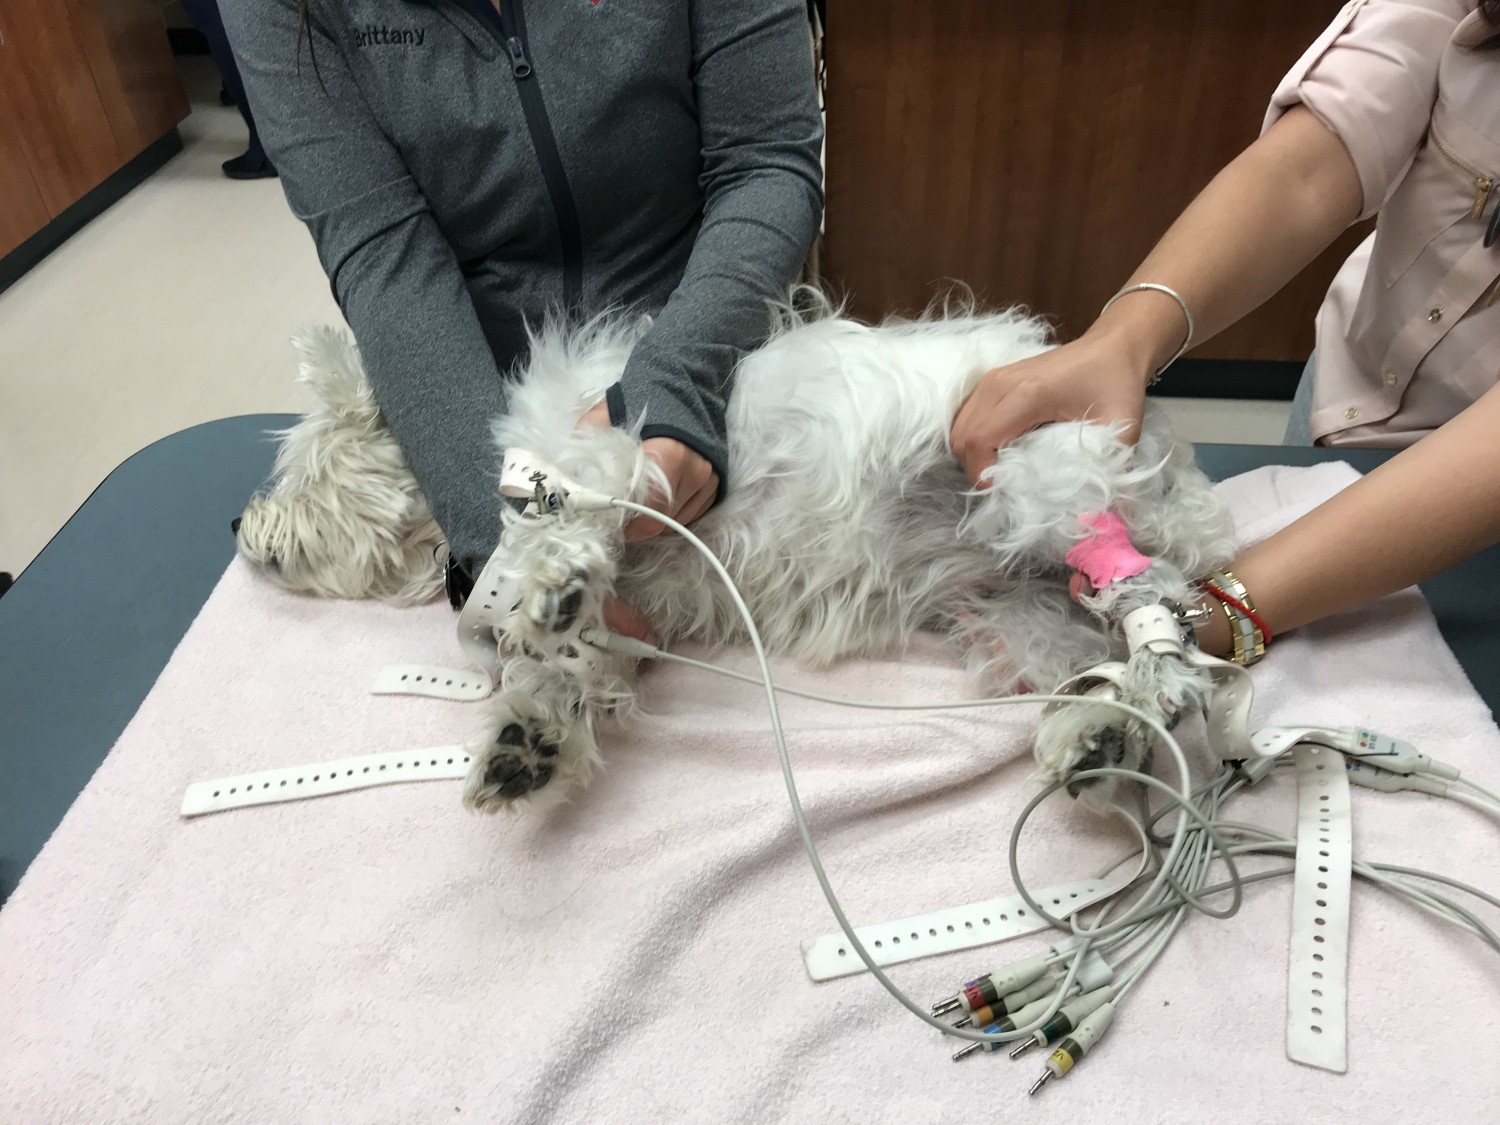 dog getting ECG/EKG